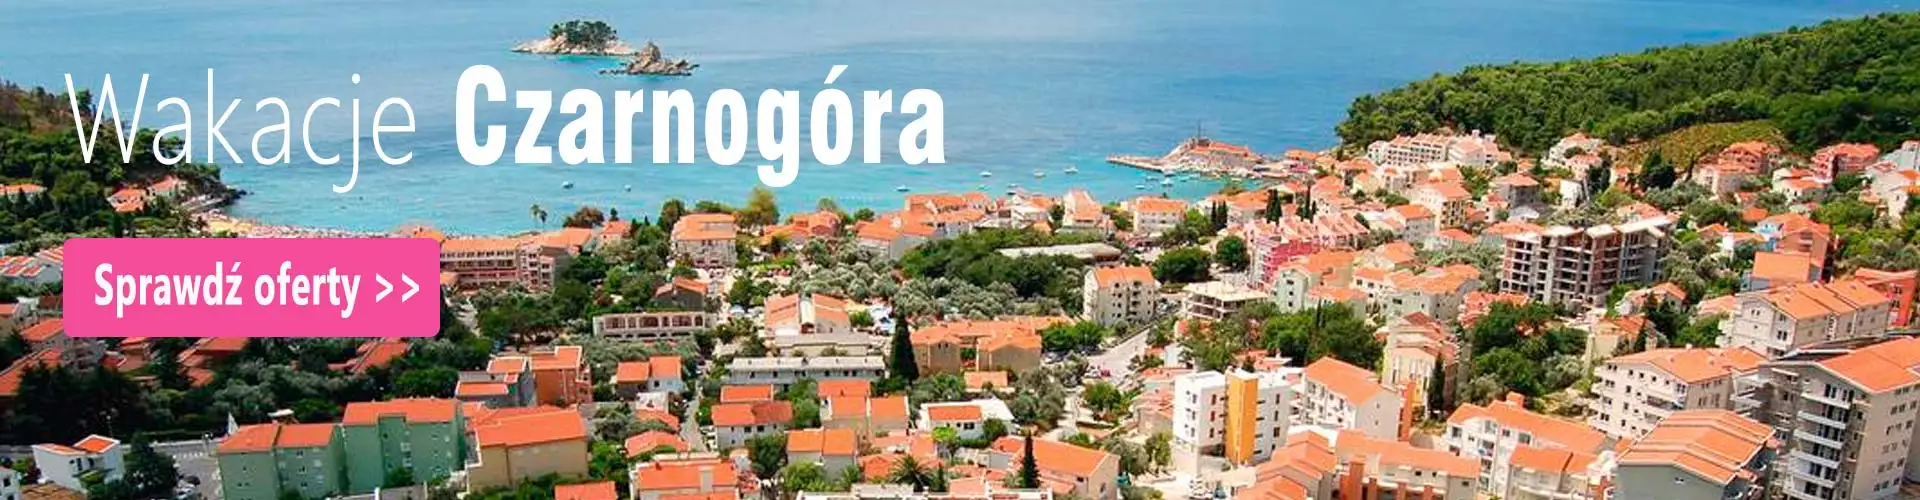 Czarnogóra wakacje i hotele last minute